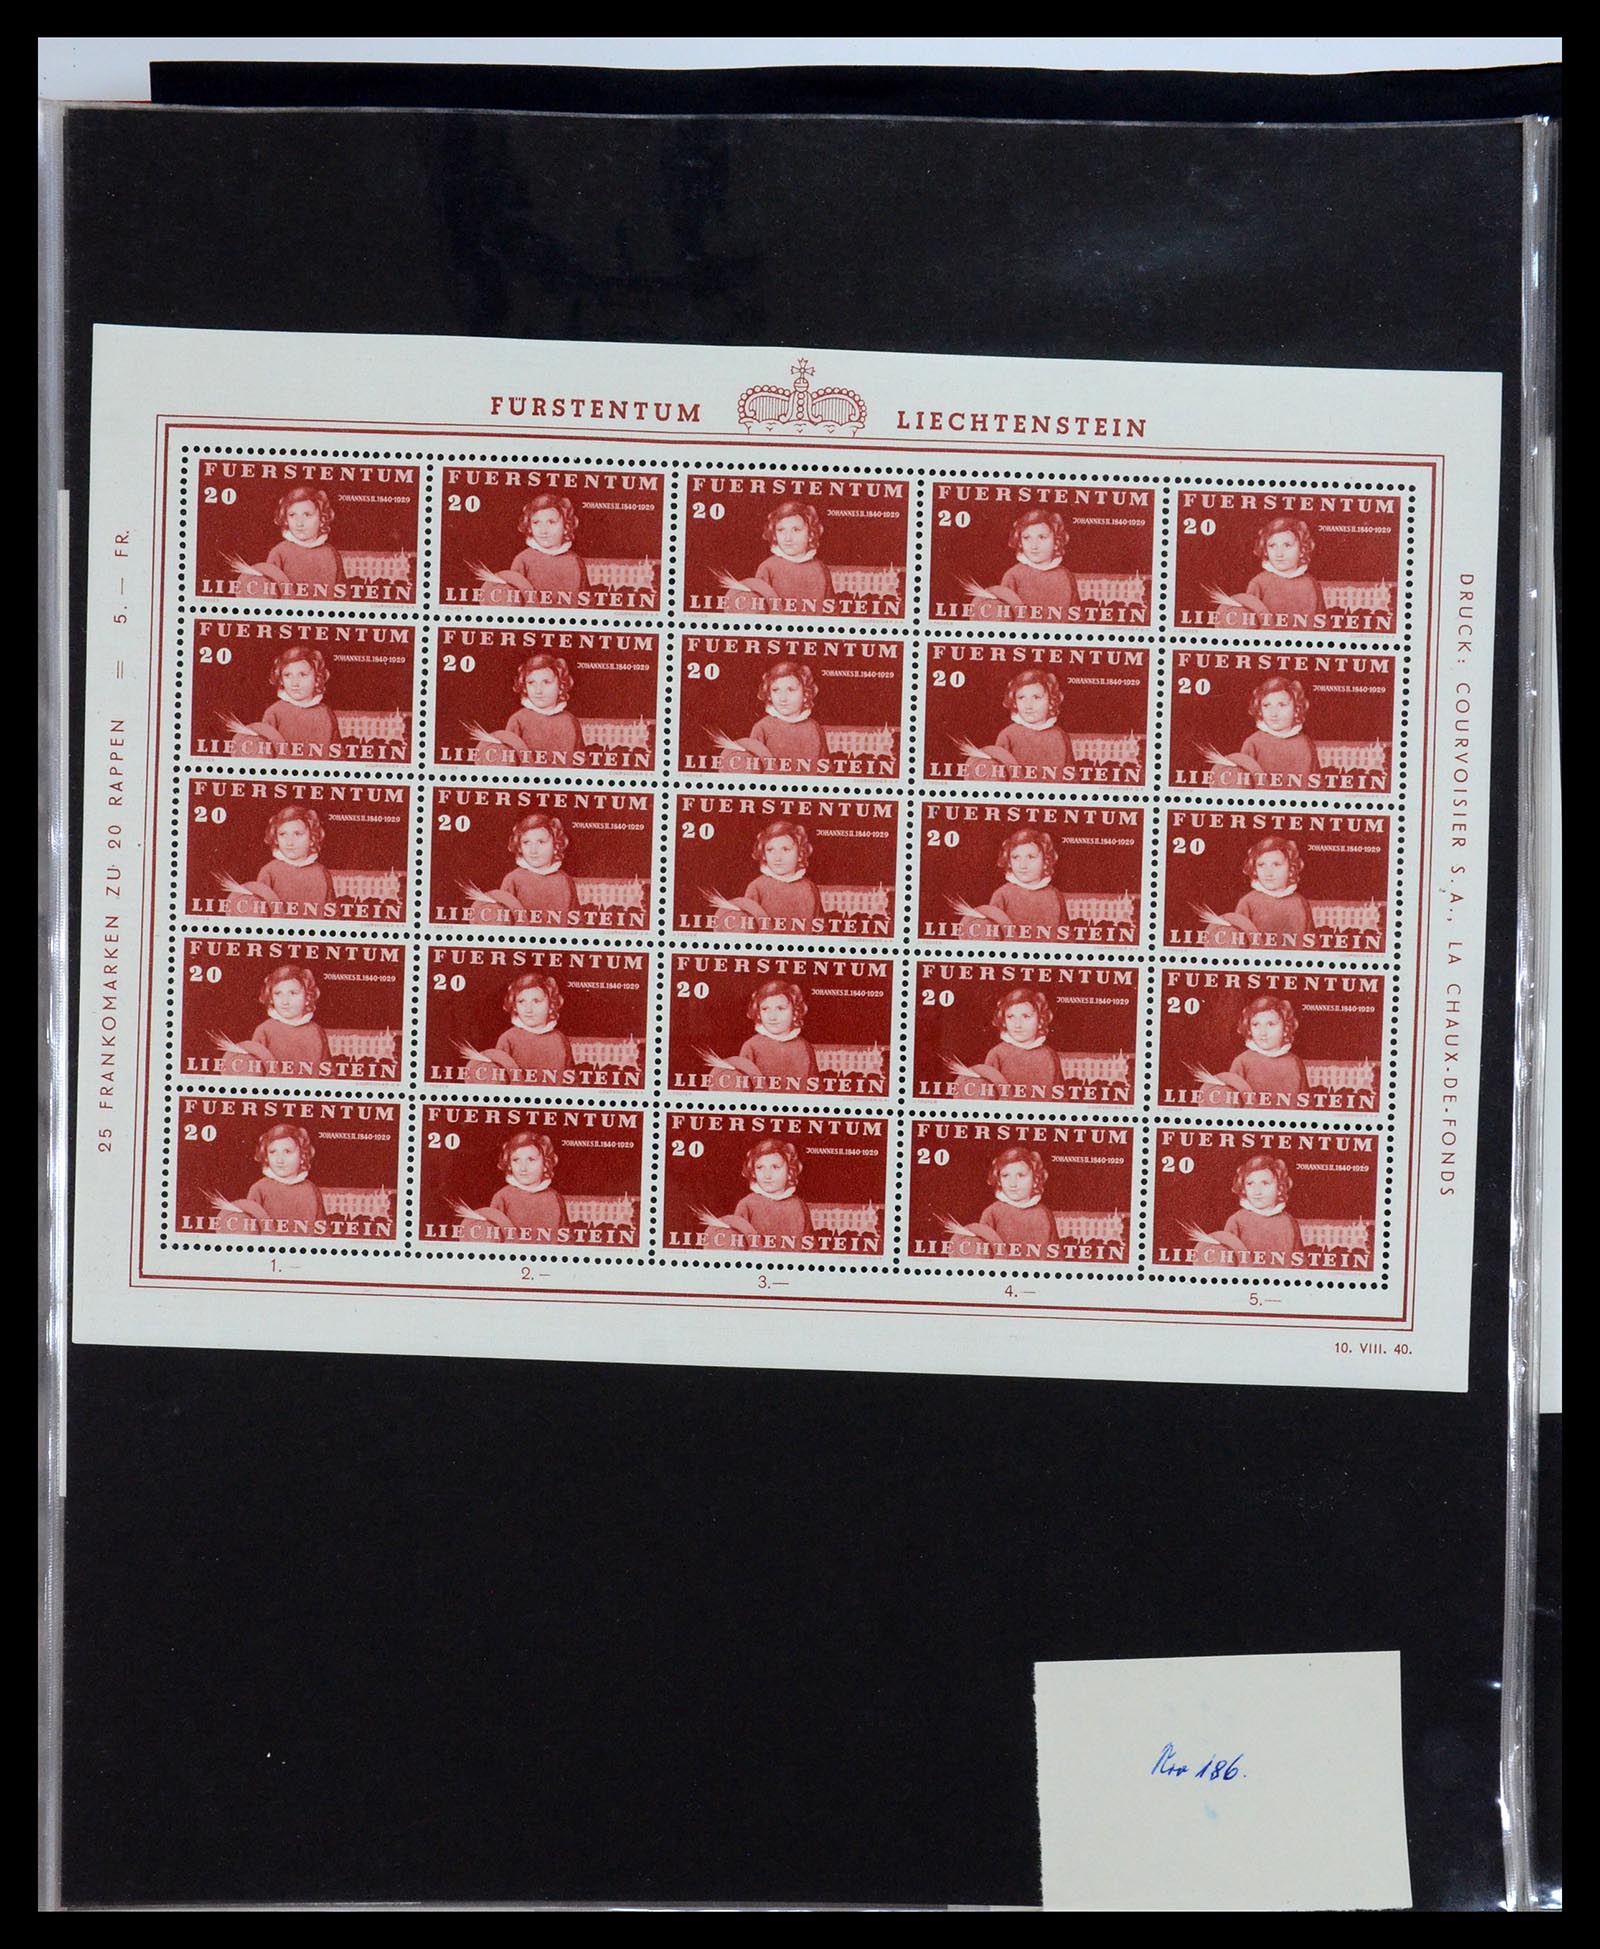 36280 009 - Stamp collection 36280 Liechtenstein souvenir sheets and sheetlets 1934-